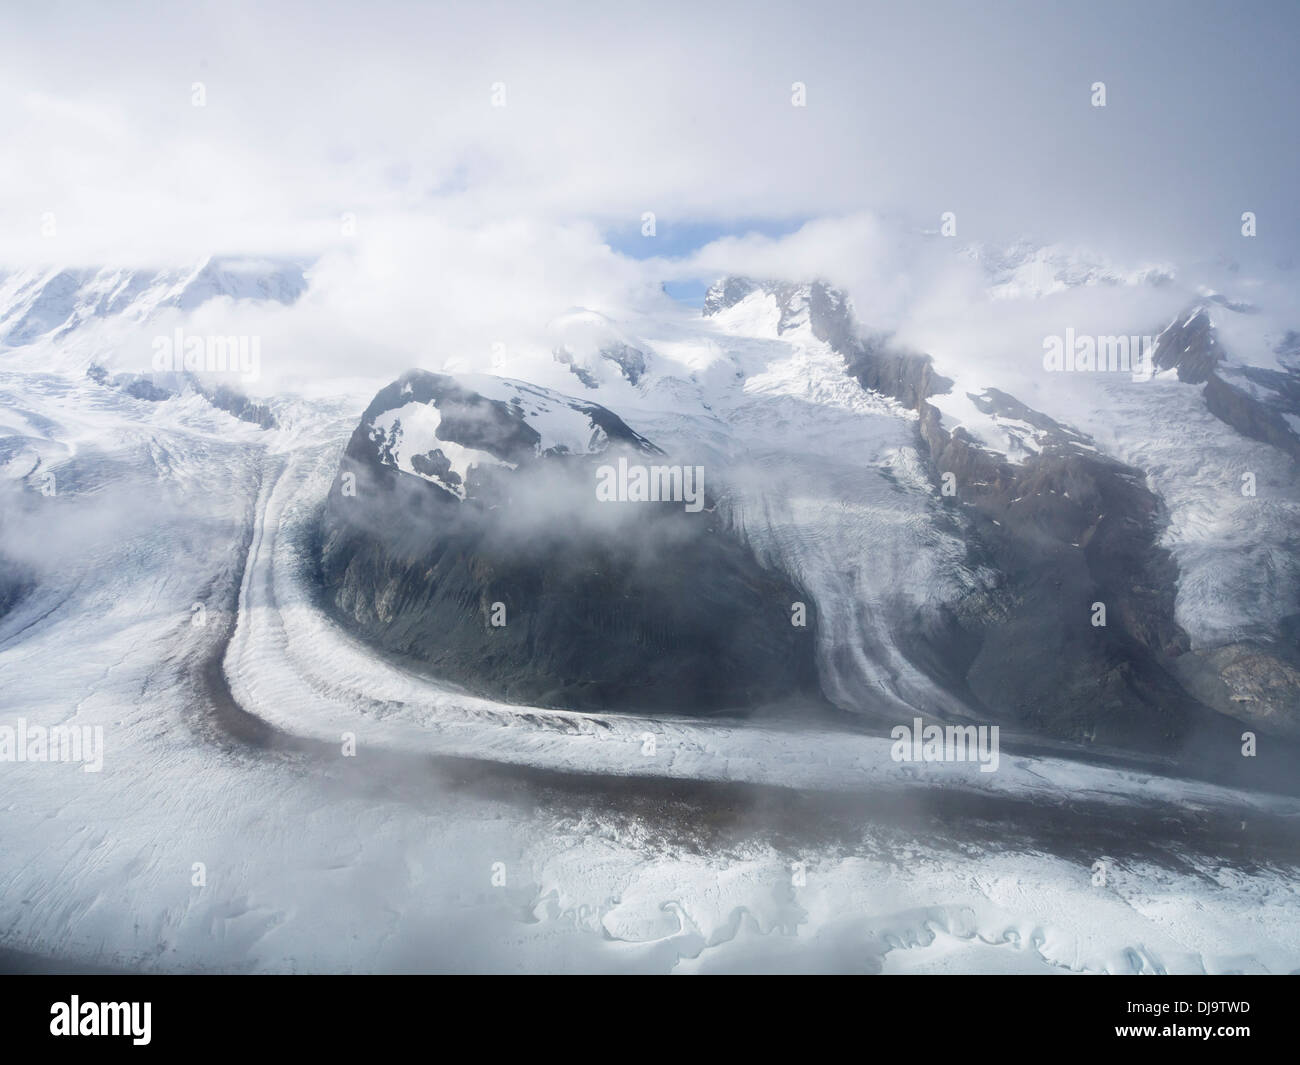 Glacier du Gorner, glaciation alpine, Gornergletscher, près de Zermatt en Suisse, sur la moraine médiane la surface glacée Banque D'Images